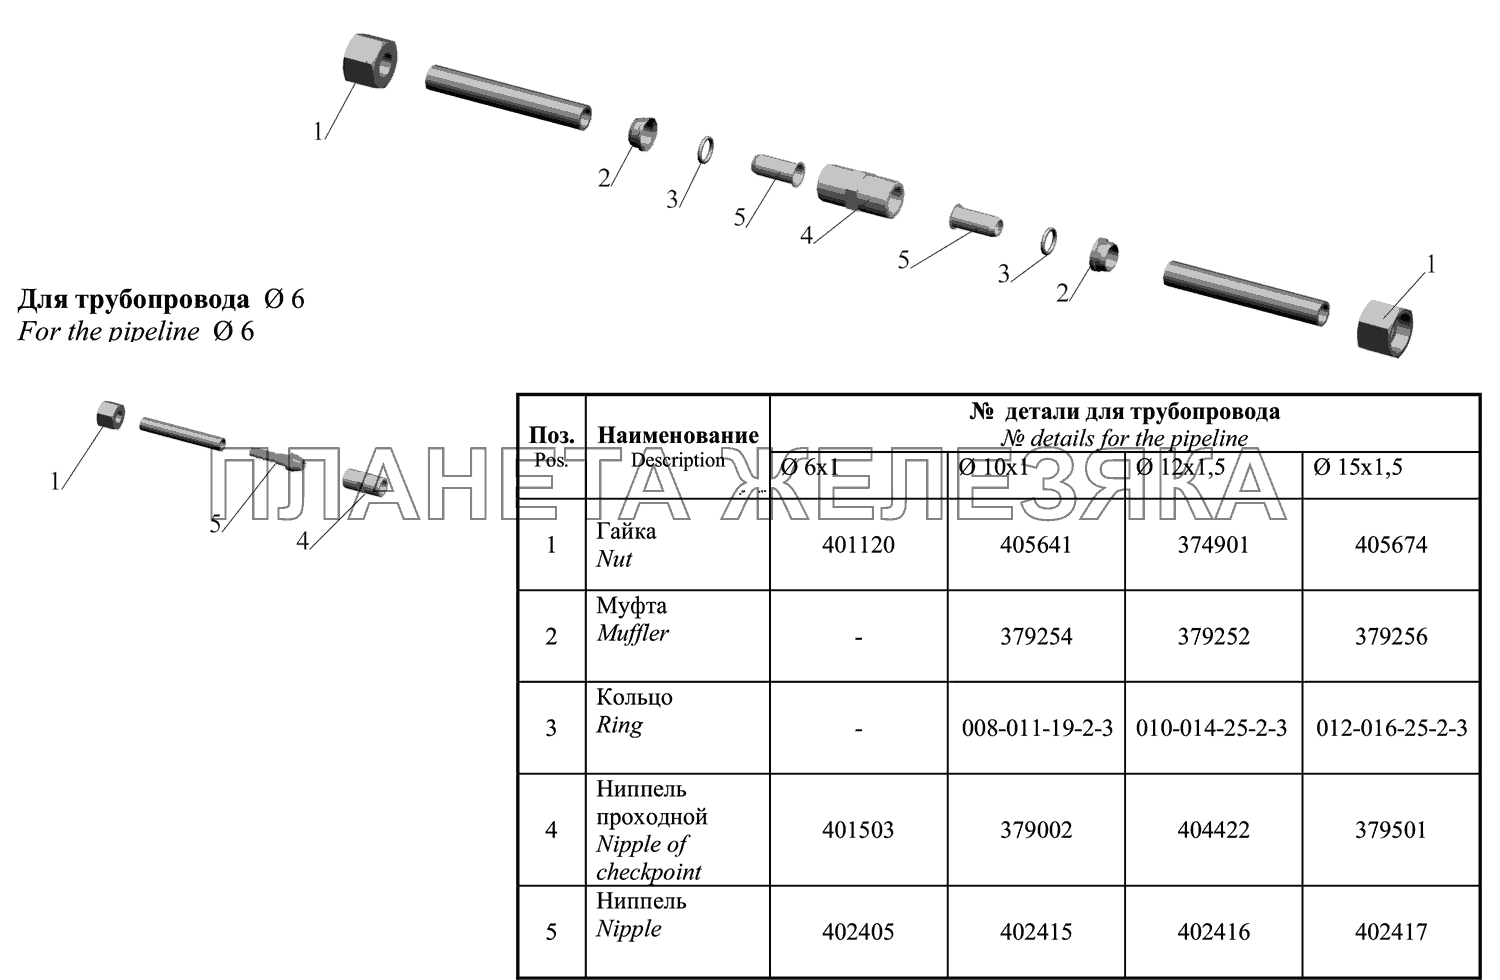 Соединение для ремонта поврежденных трубопроводов МАЗ-651669-320 (340)